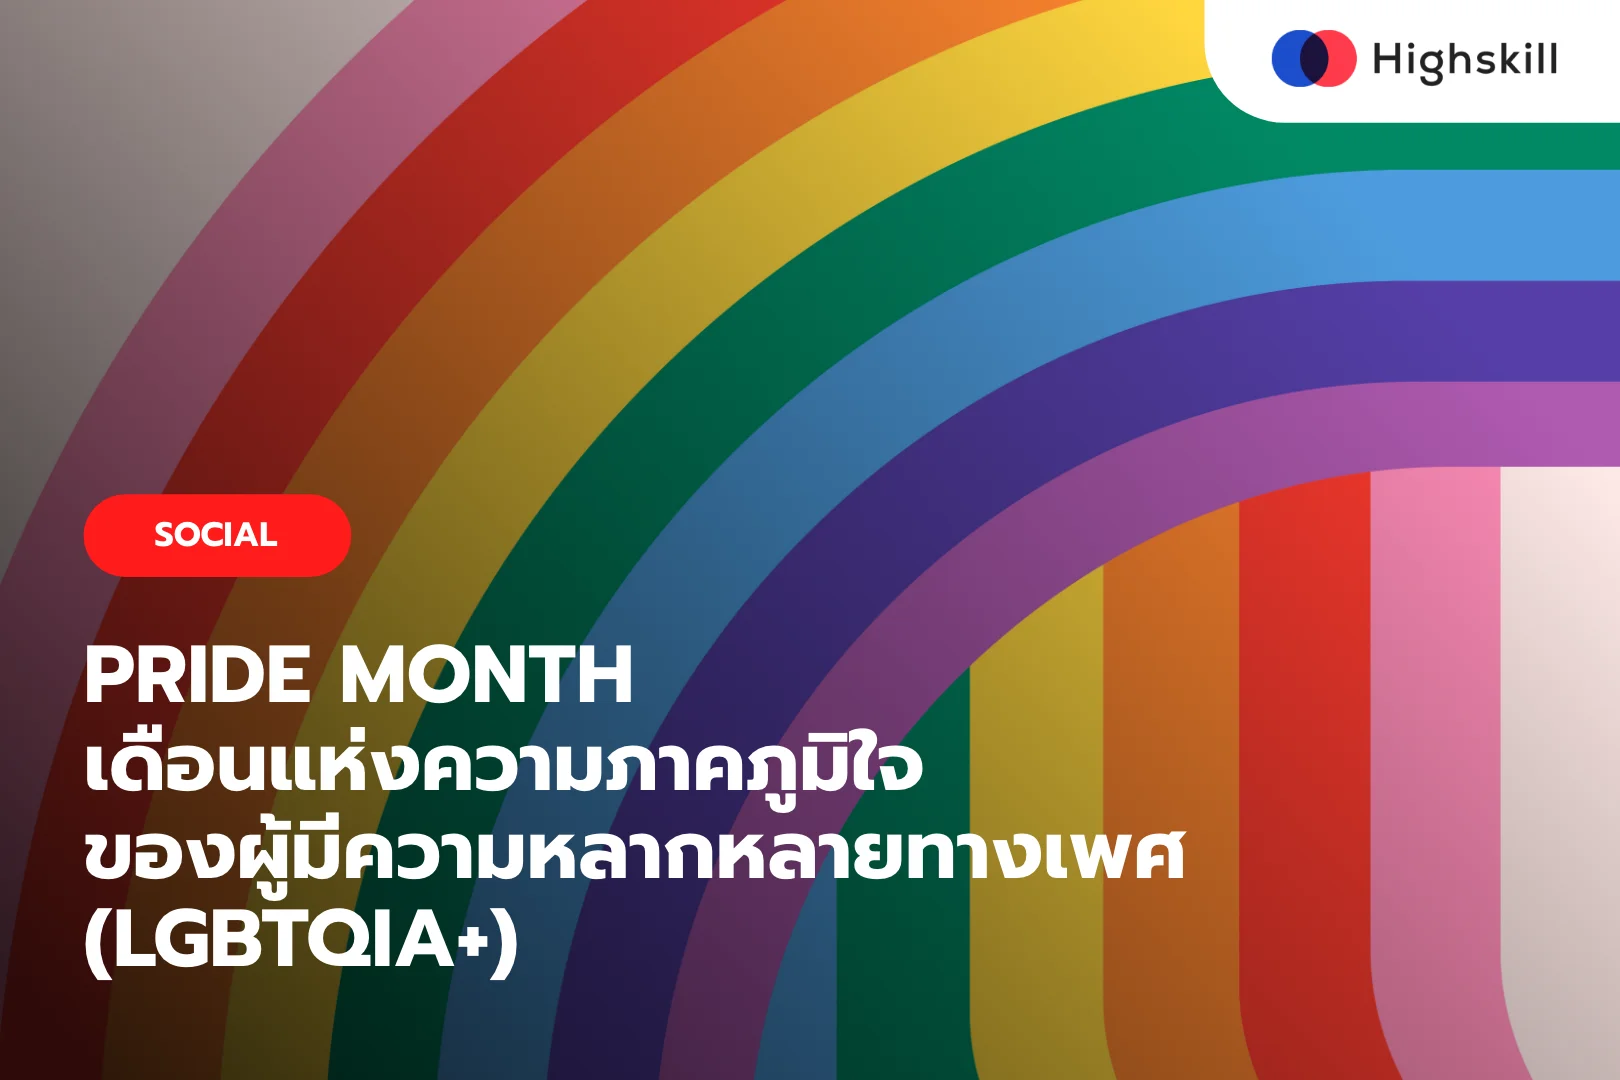 PRIDE MONTH เดือนแห่งความภาคภูมิใจของผู้มีความหลากหลายทางเพศ (LGBTQIA+)